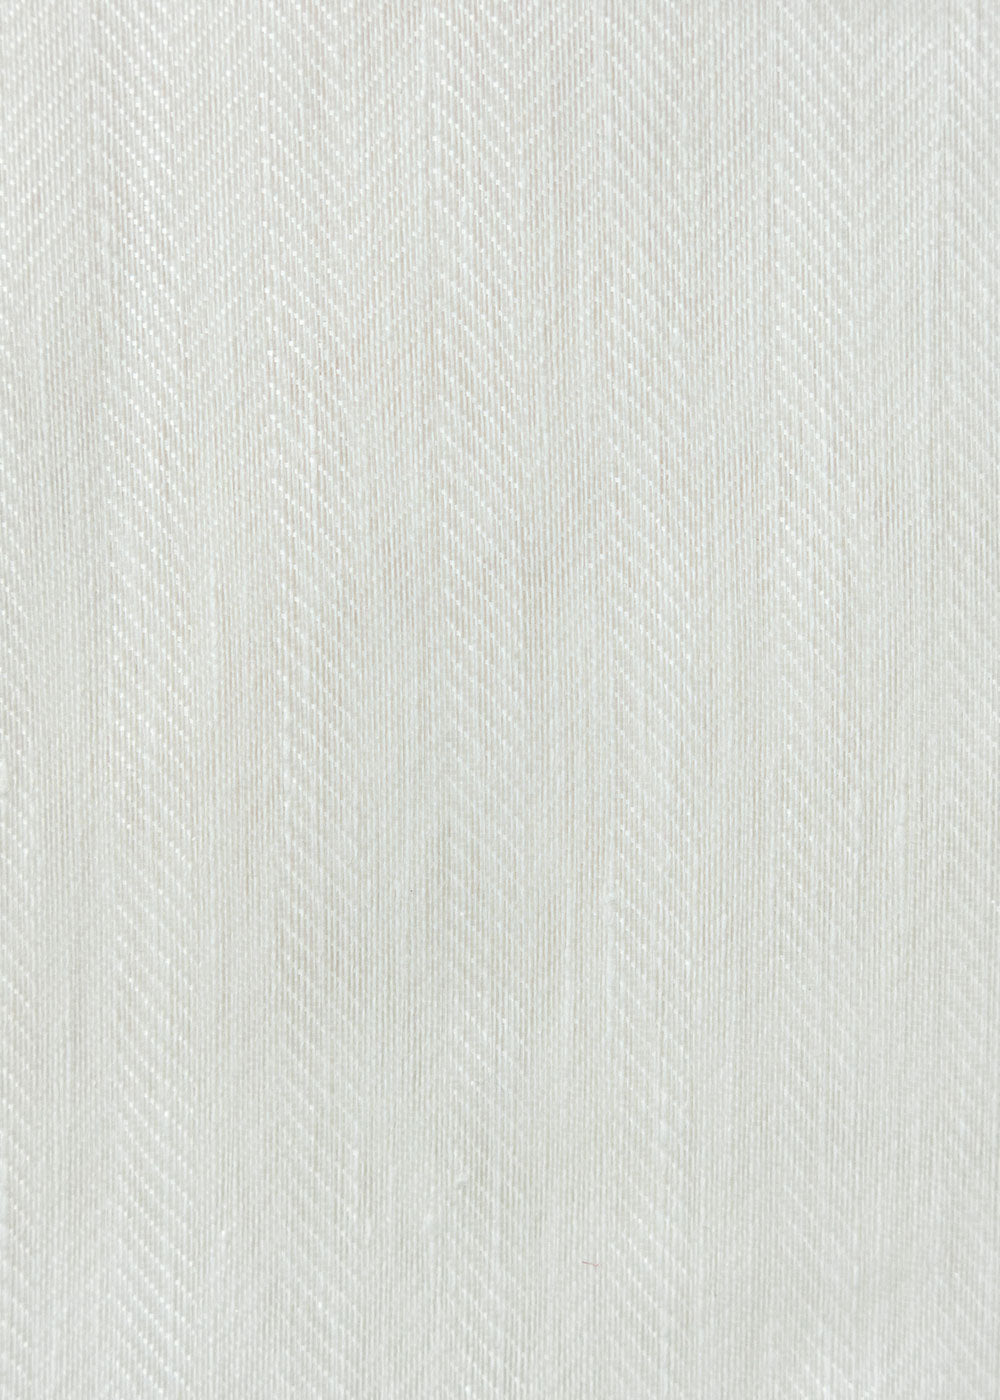 white herringbone weave sheer fabric